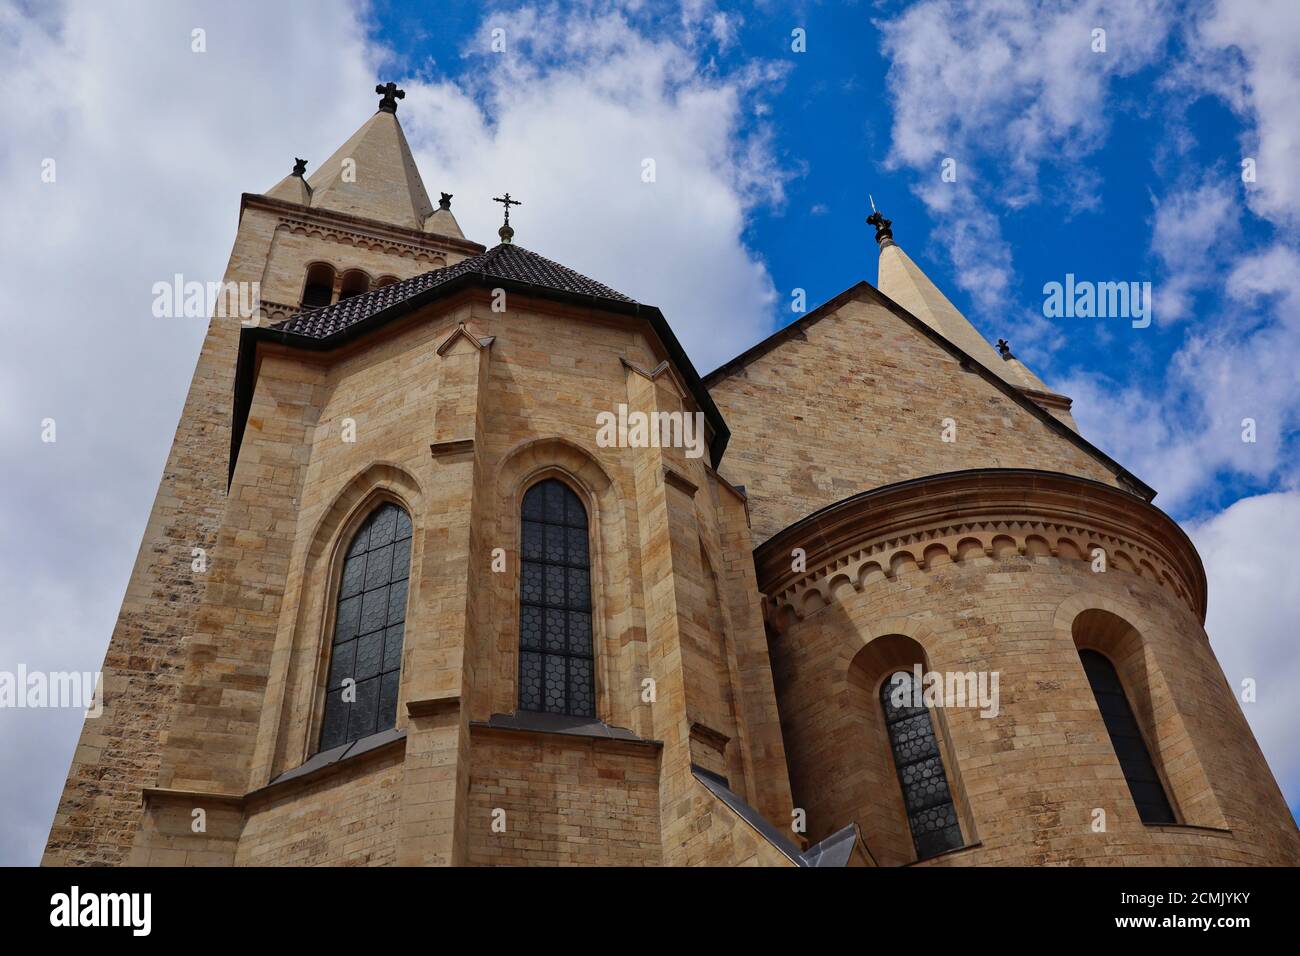 Die St.-Georgs-Basilika ist das älteste erhaltene Kirchengebäude im Prager Burgkomplex. Außenansicht des wunderschönen historischen Gebäudes. Stockfoto